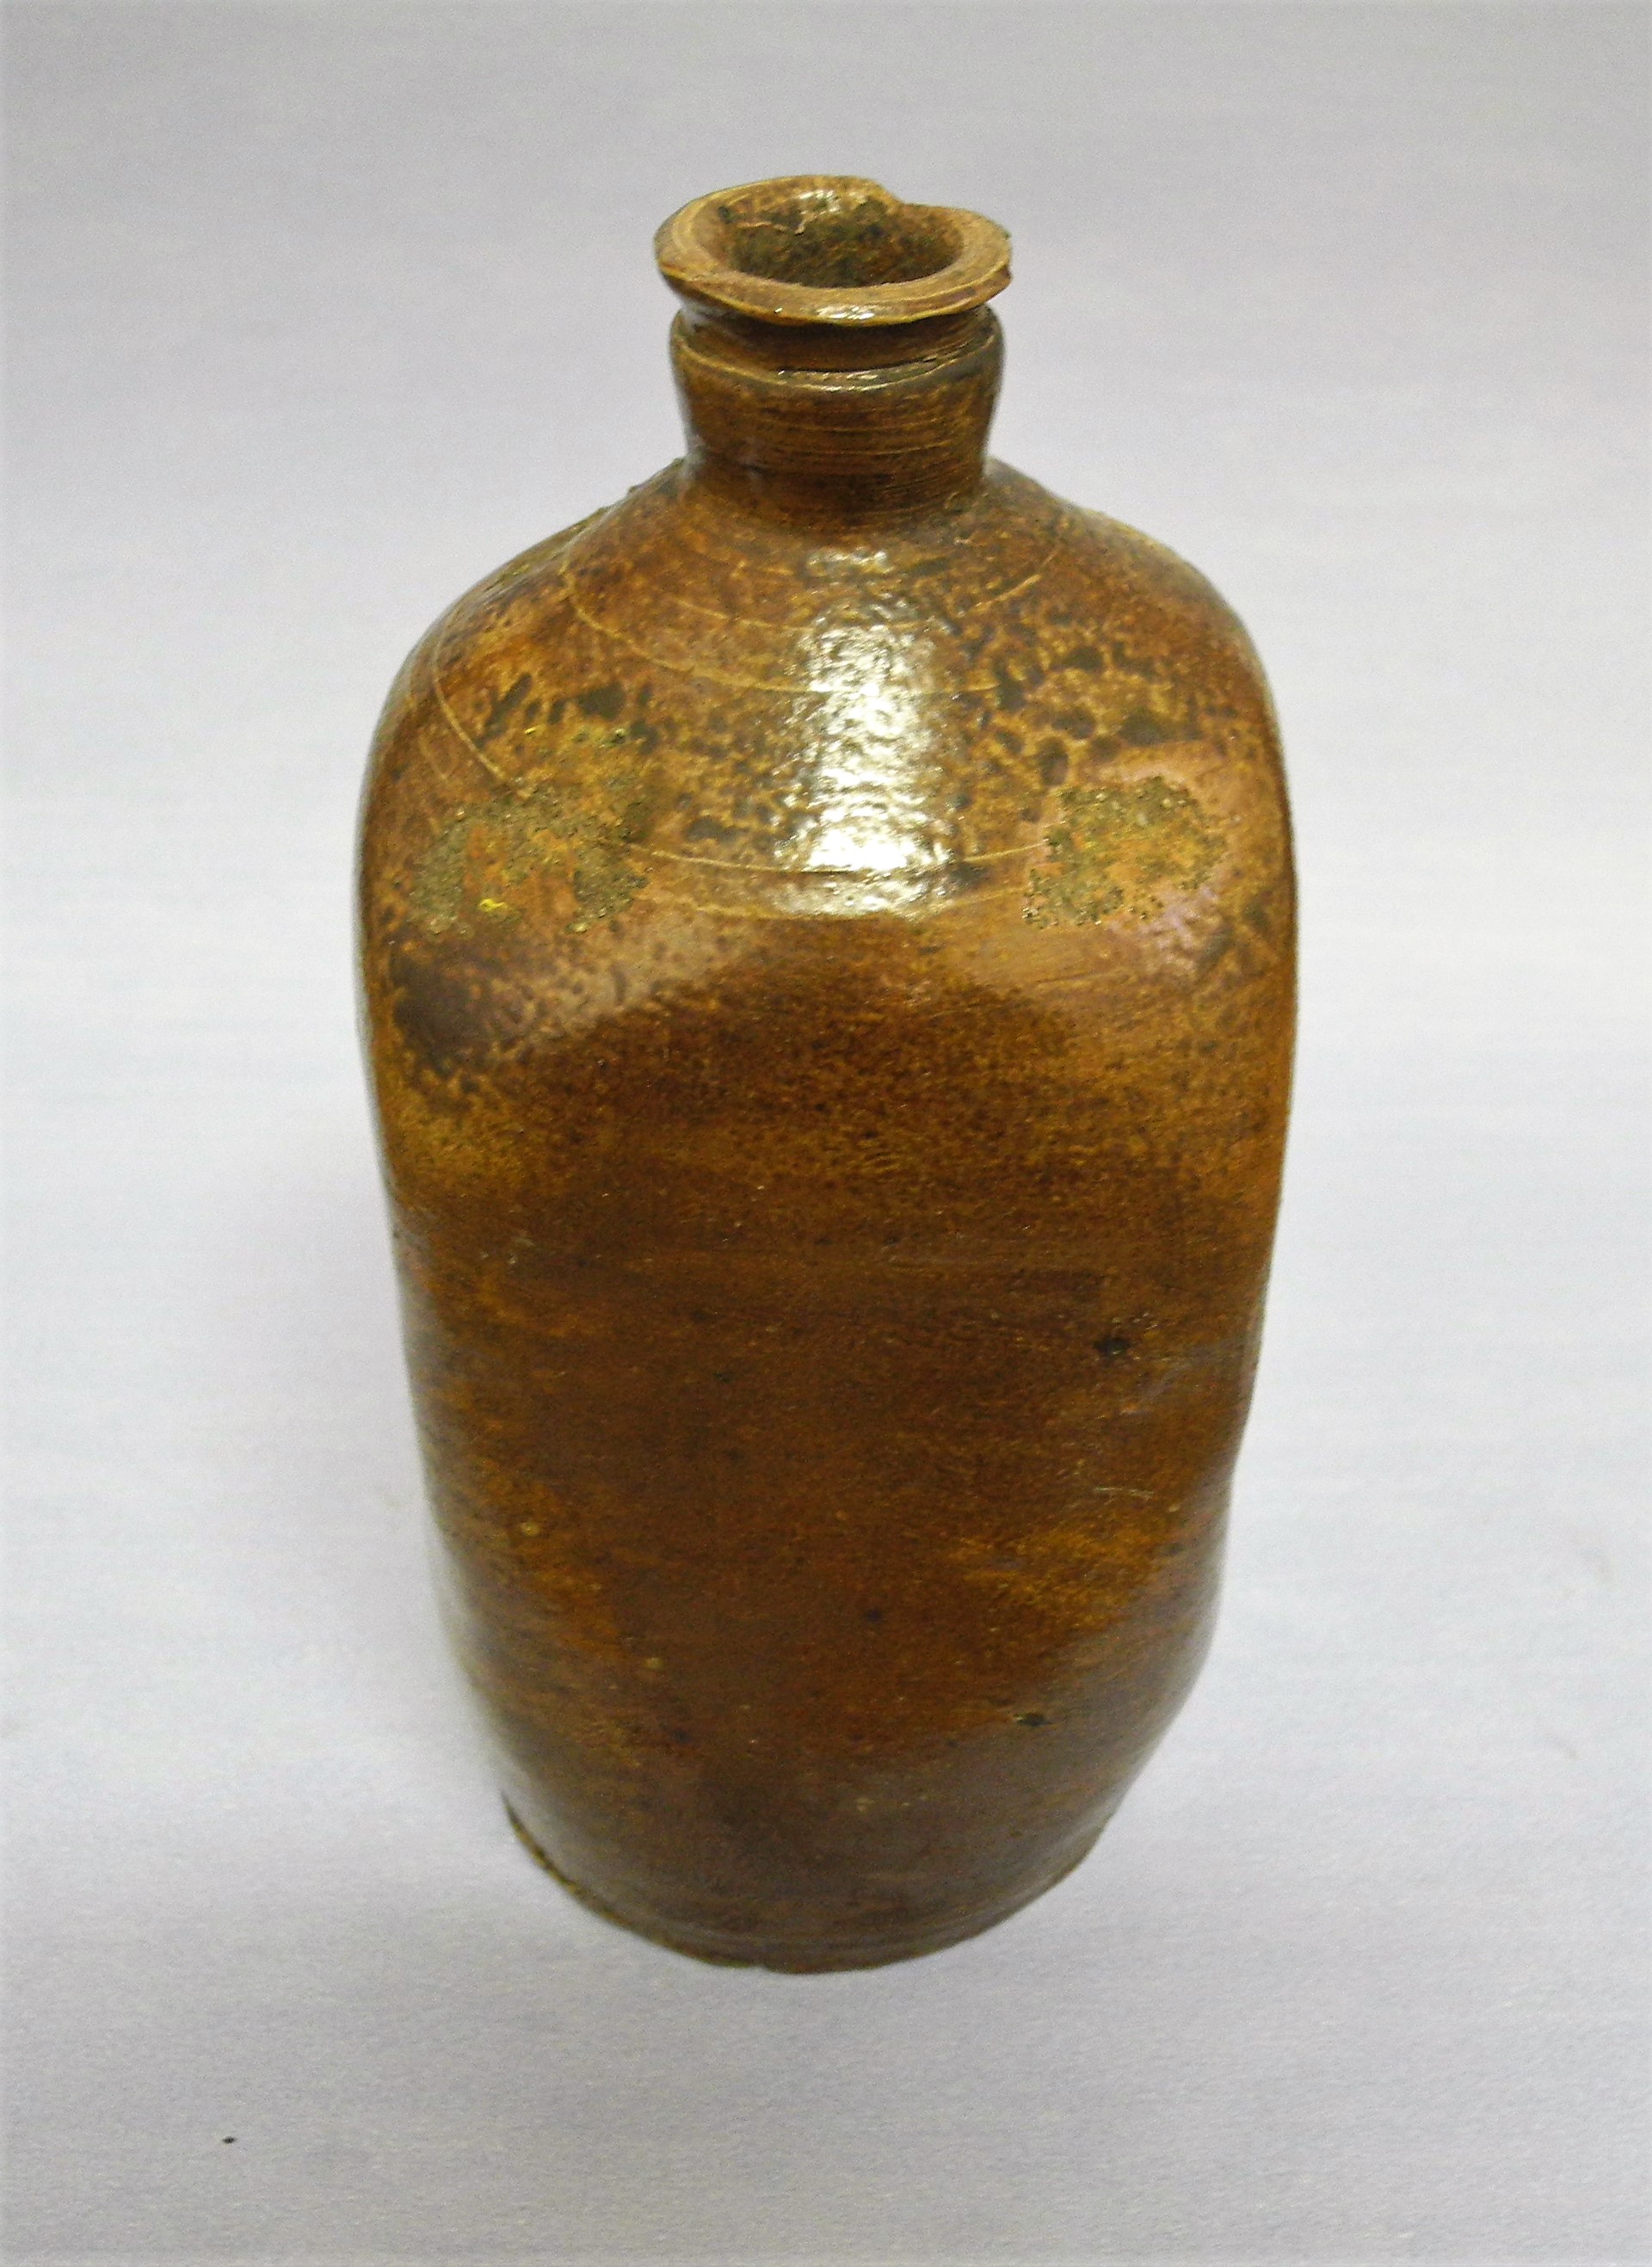 Steinzeugflasche "Pilnaer Bitterwasser" (Erlebniswelt Museen e. V. CC BY-NC-SA)